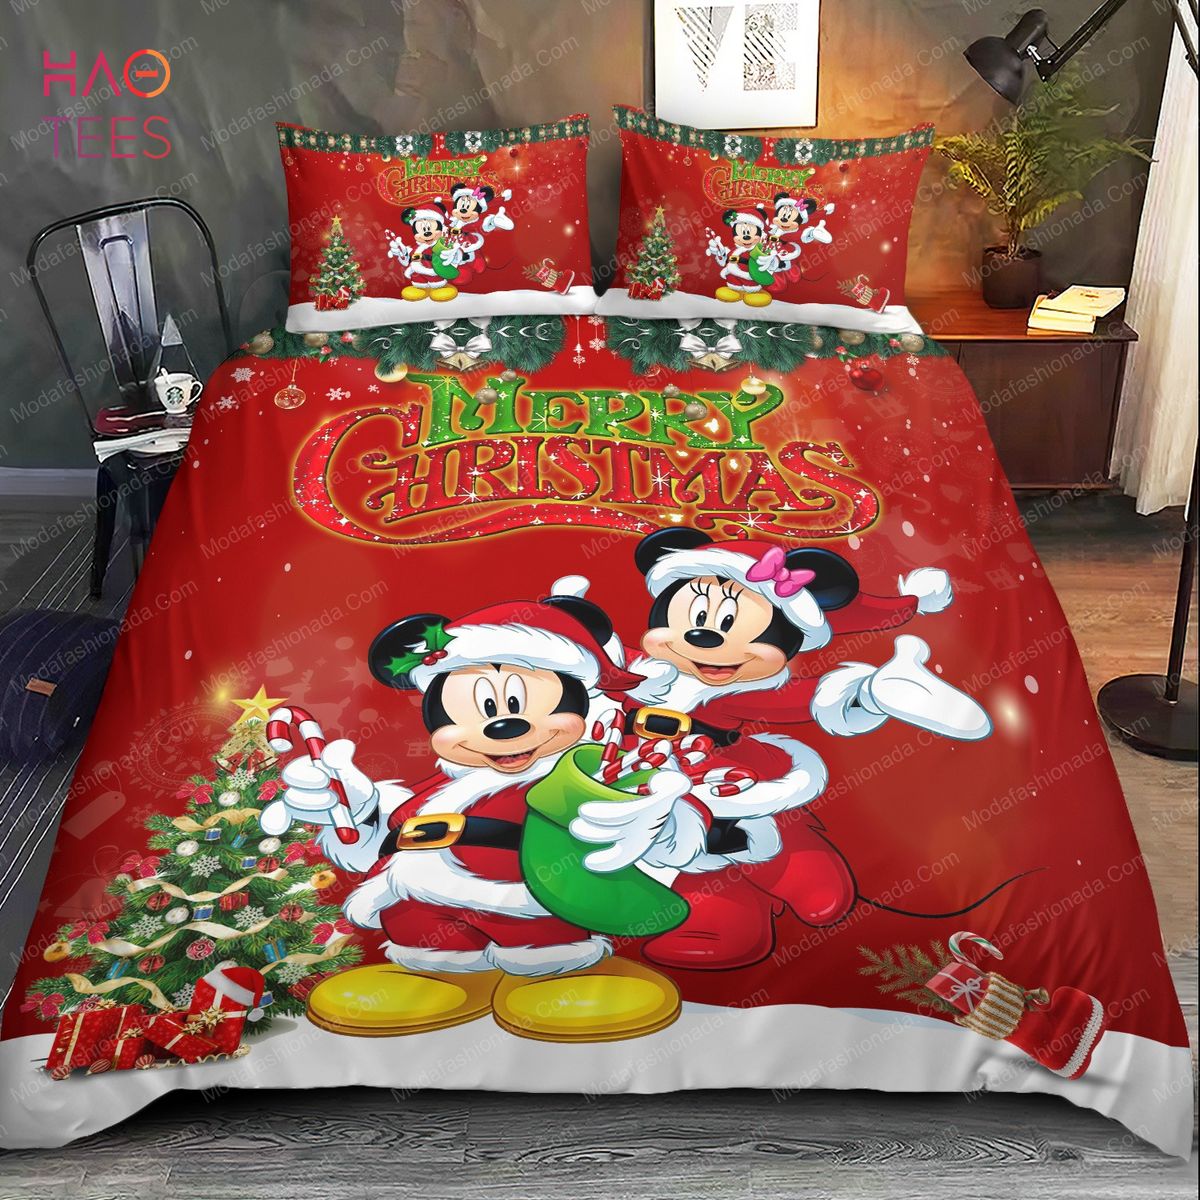 Buy Minions Santa Claus Louis Vuitton Bedding Sets Bed Sets